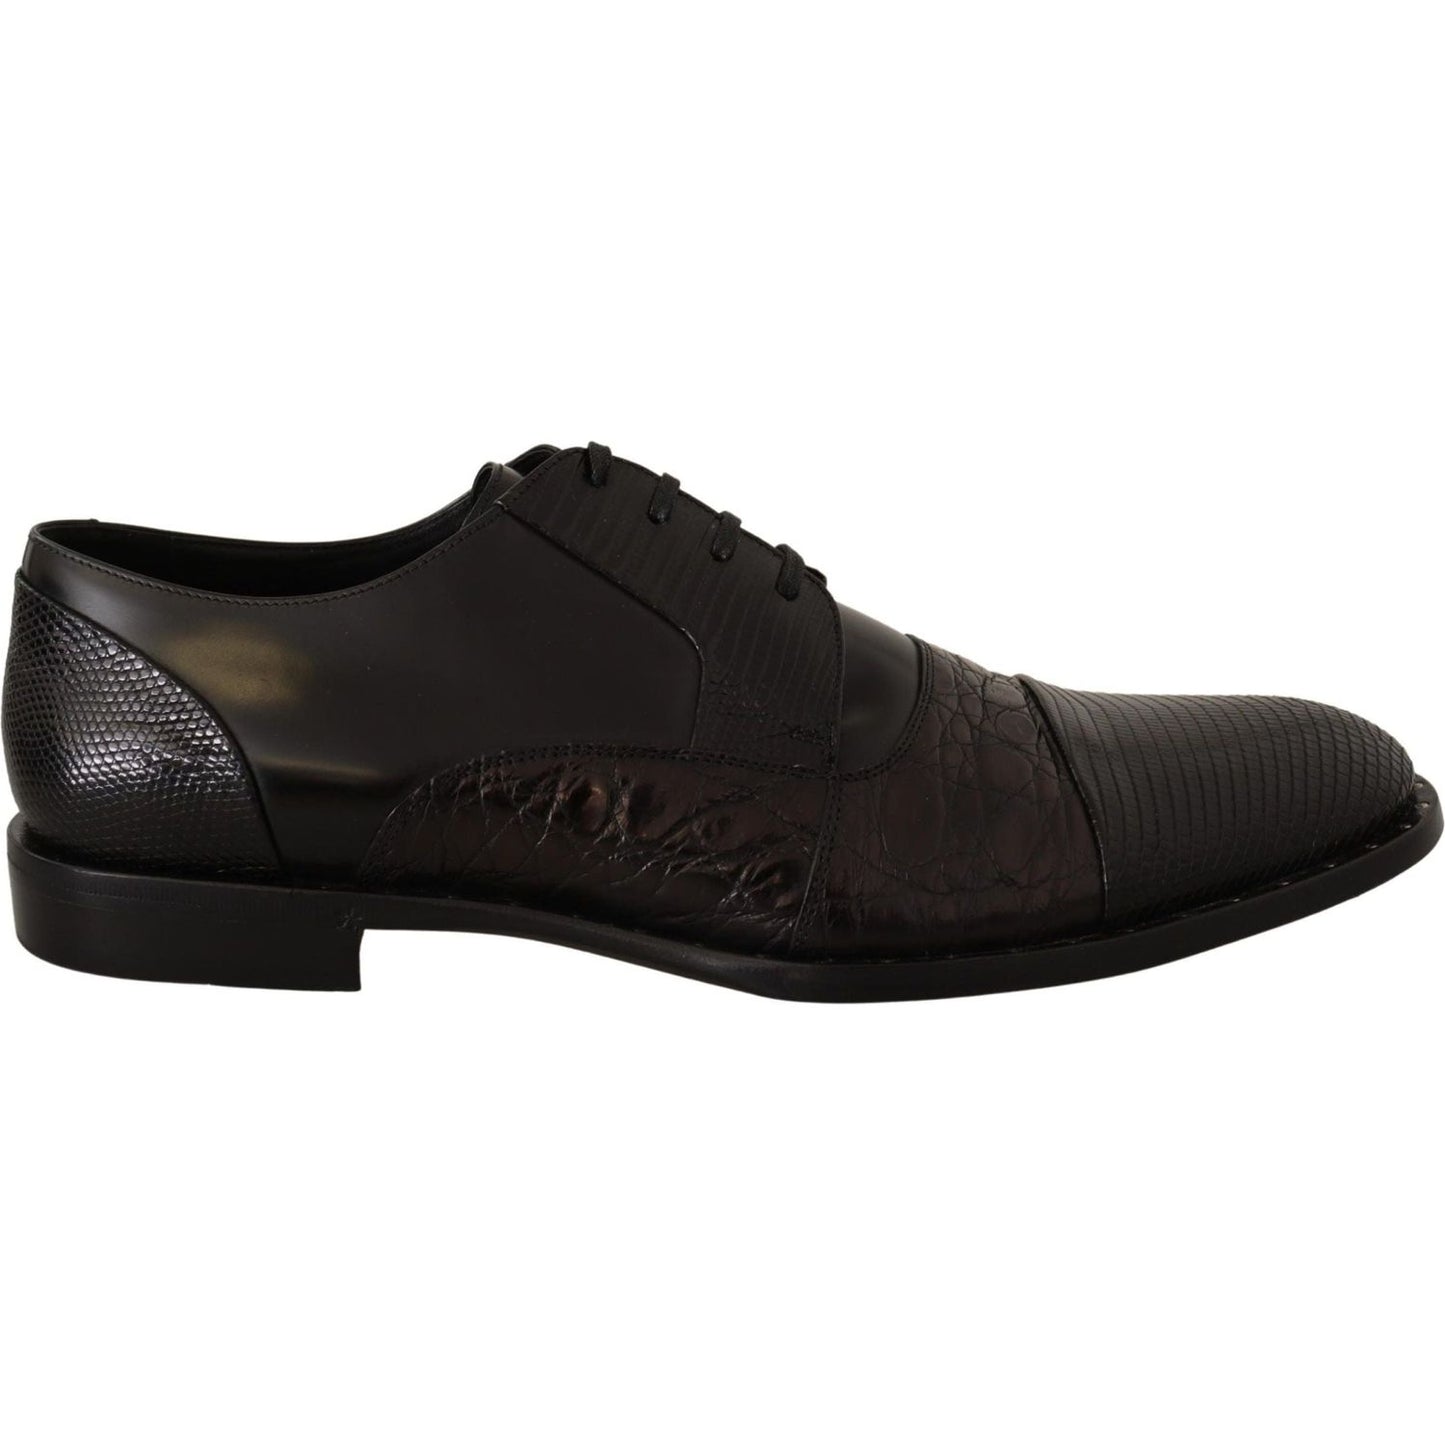 Dolce & Gabbana Elegant Black Derby Oxford Wingtips black-leather-exotic-skins-formal-shoes IMG_5313-scaled-f1e2208d-24d.jpg